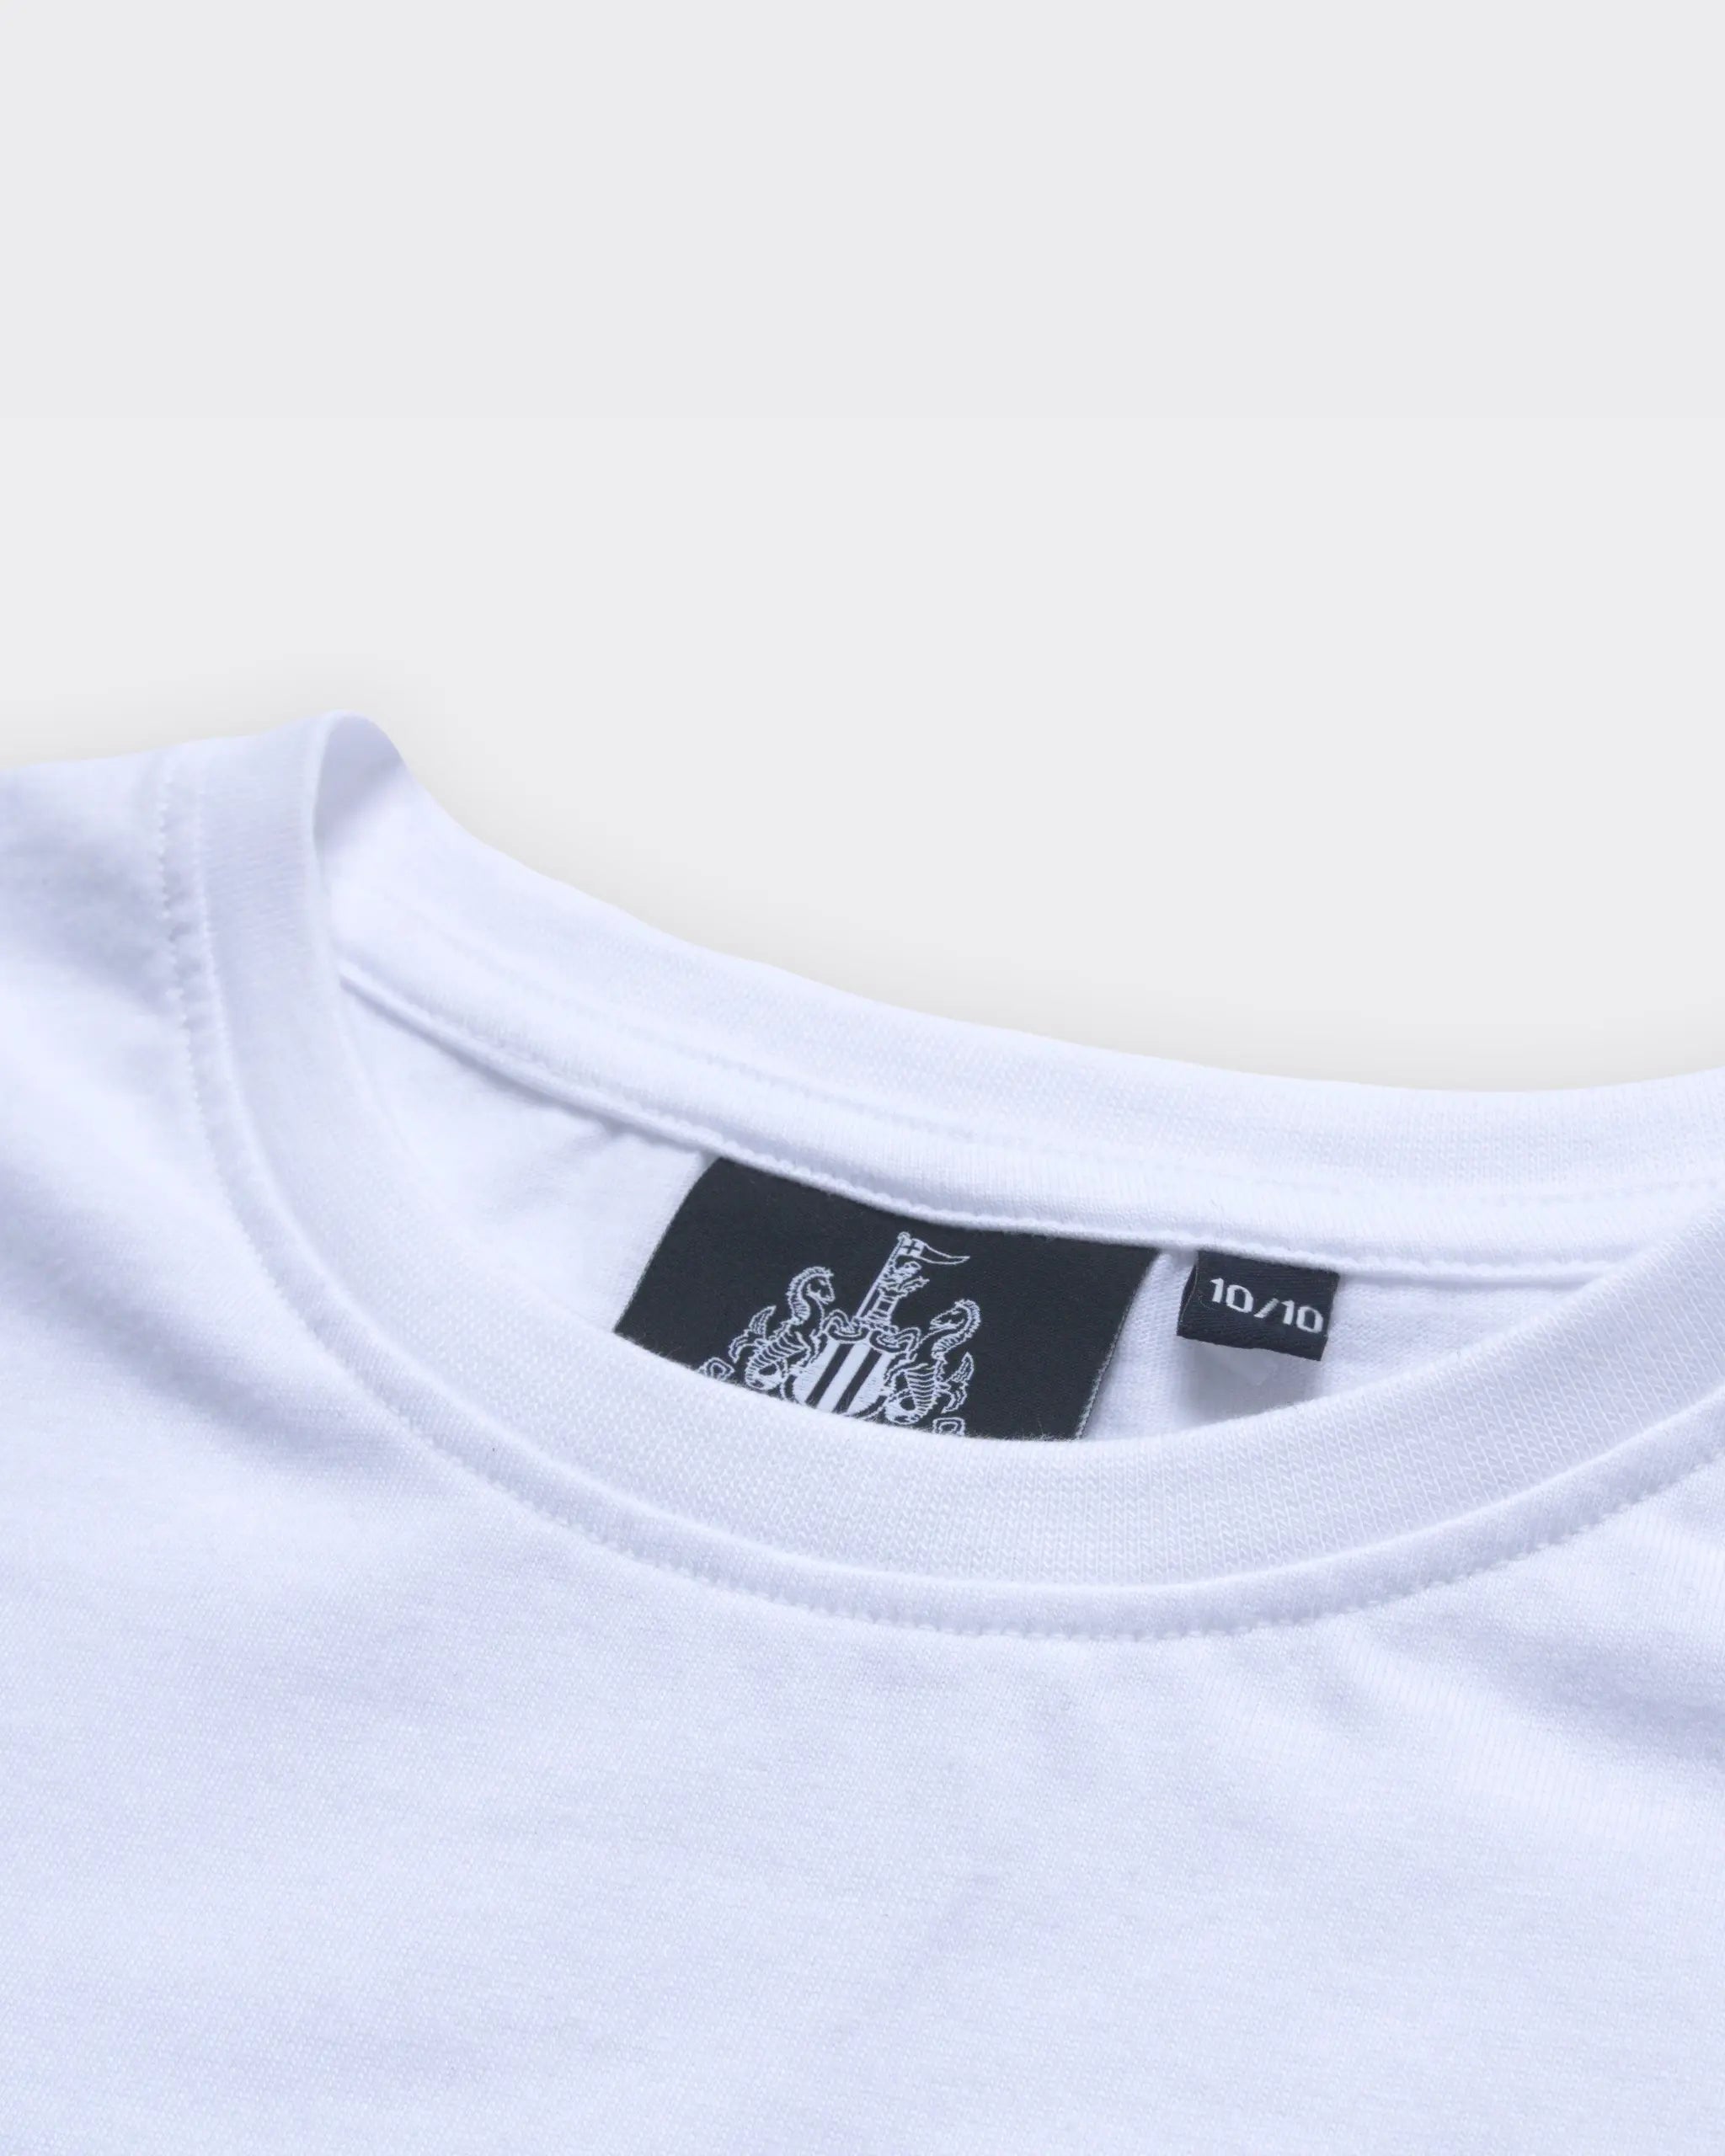 Newcastle United Girl's White Terrace Crest T-Shirt